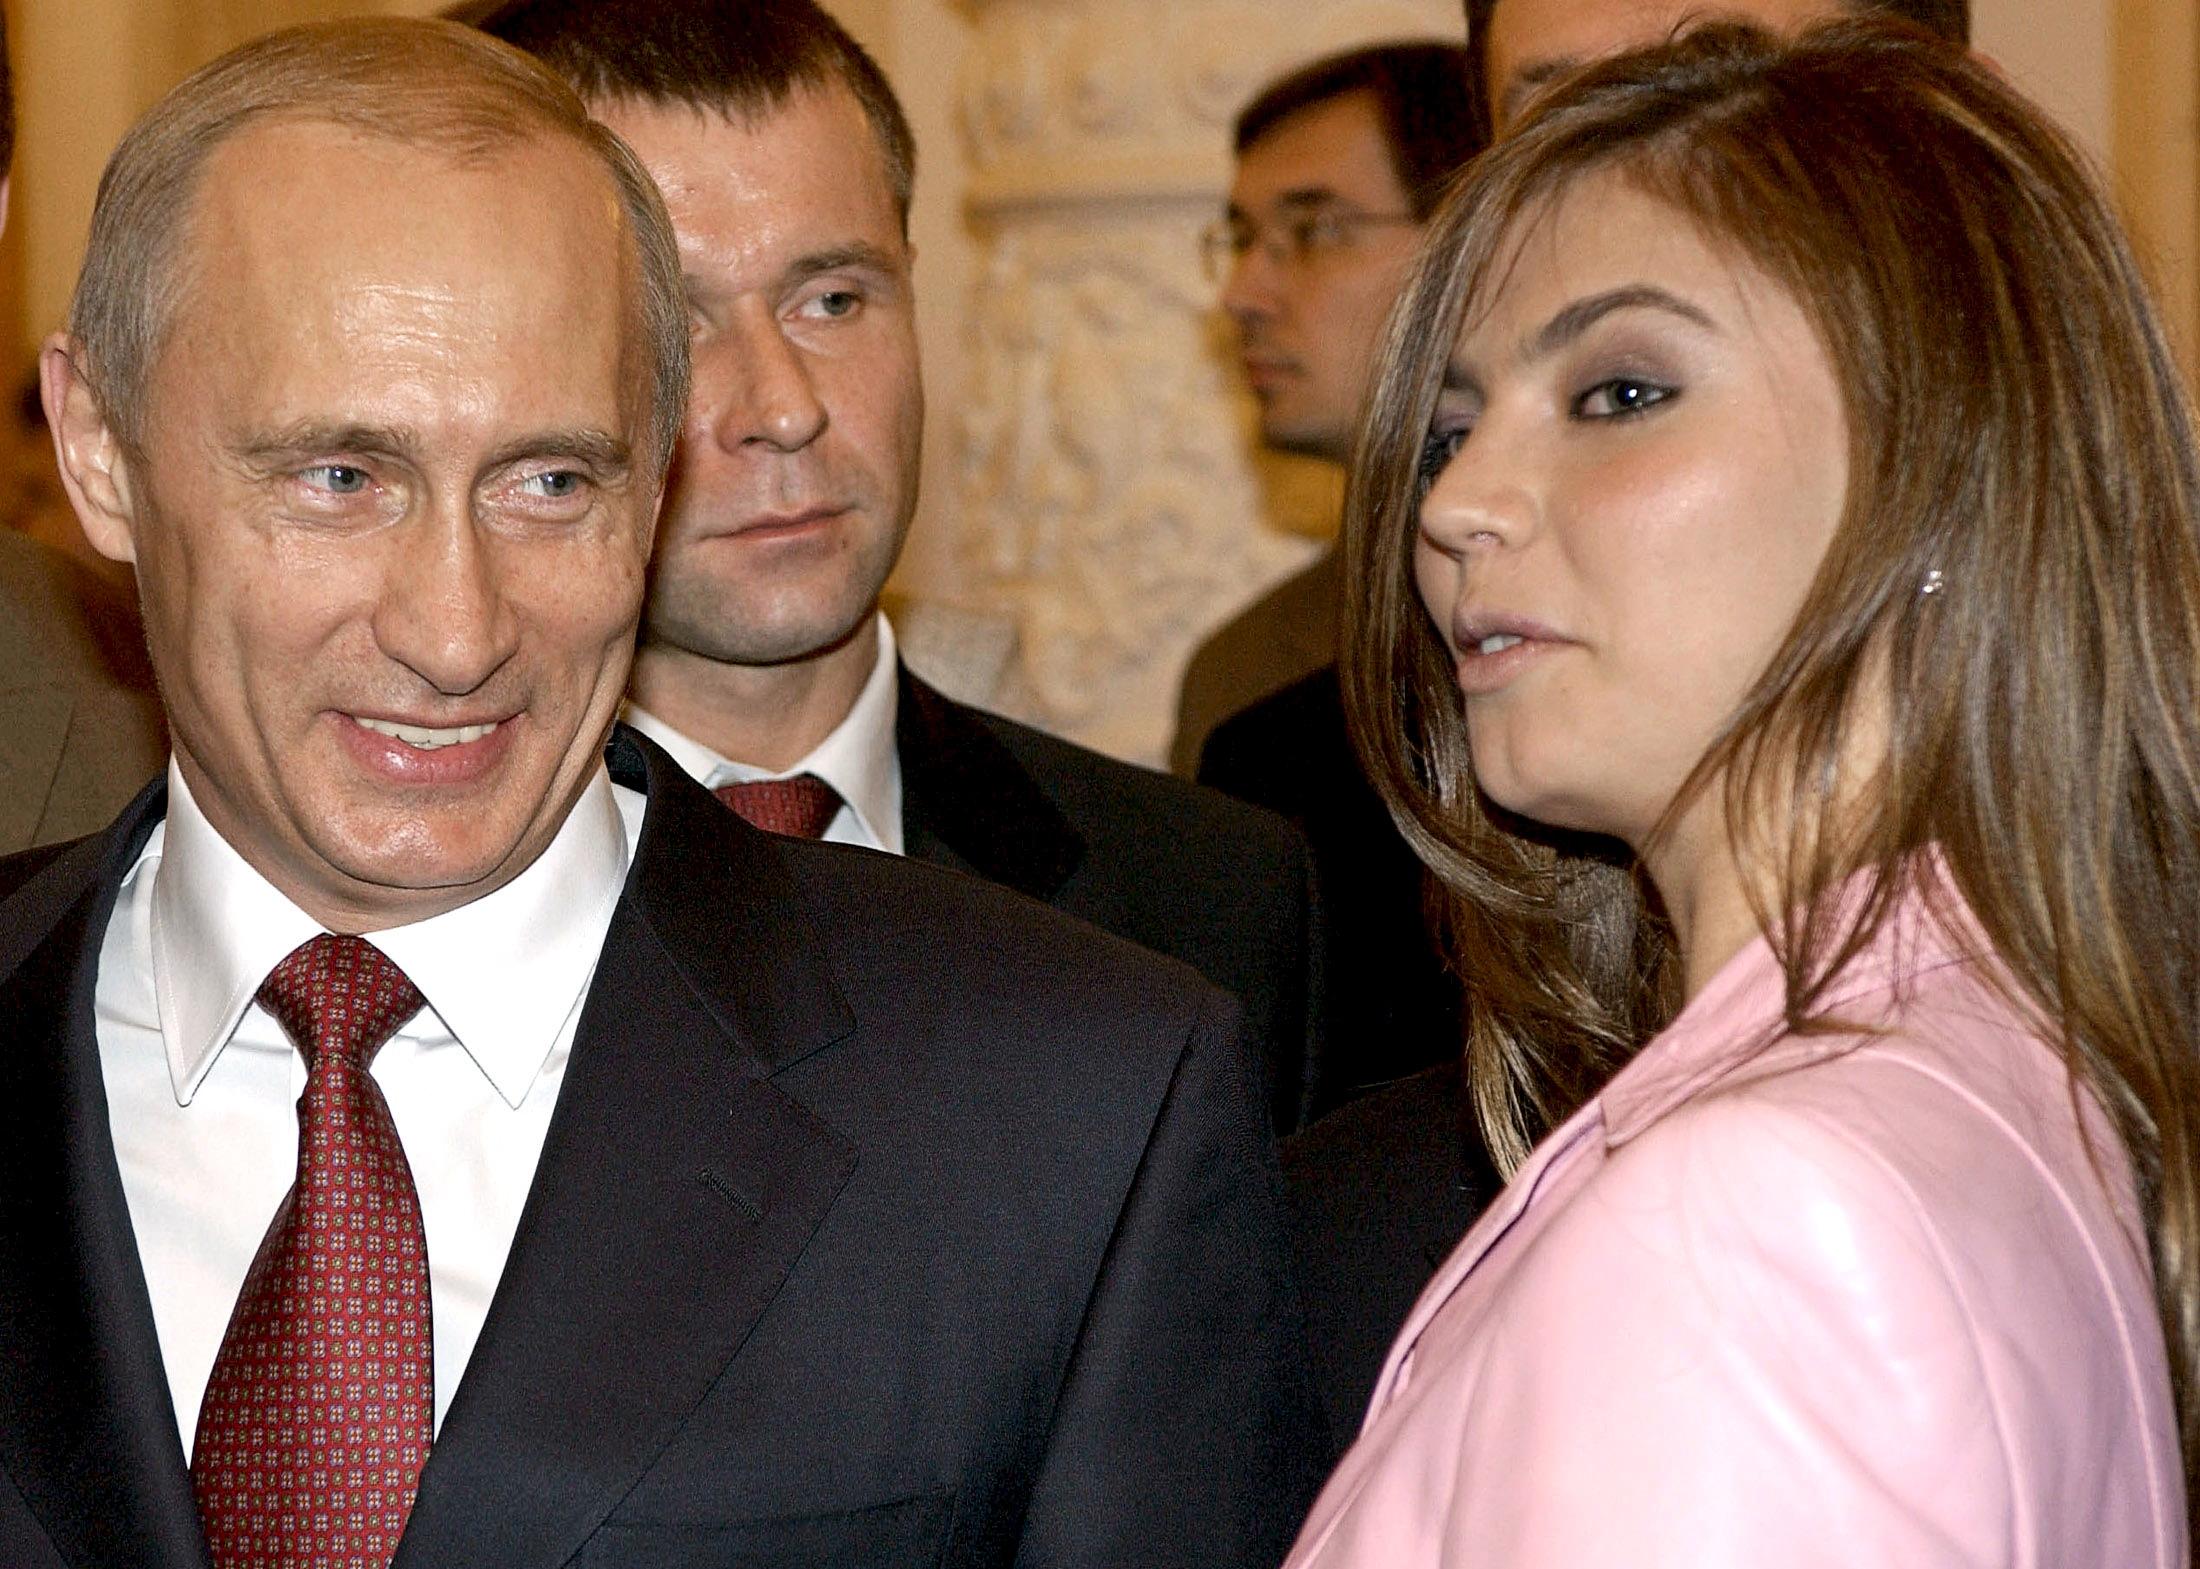 Celebridades: Vladimir Putin terá escondido a sua família num chalé seguro na Suíça